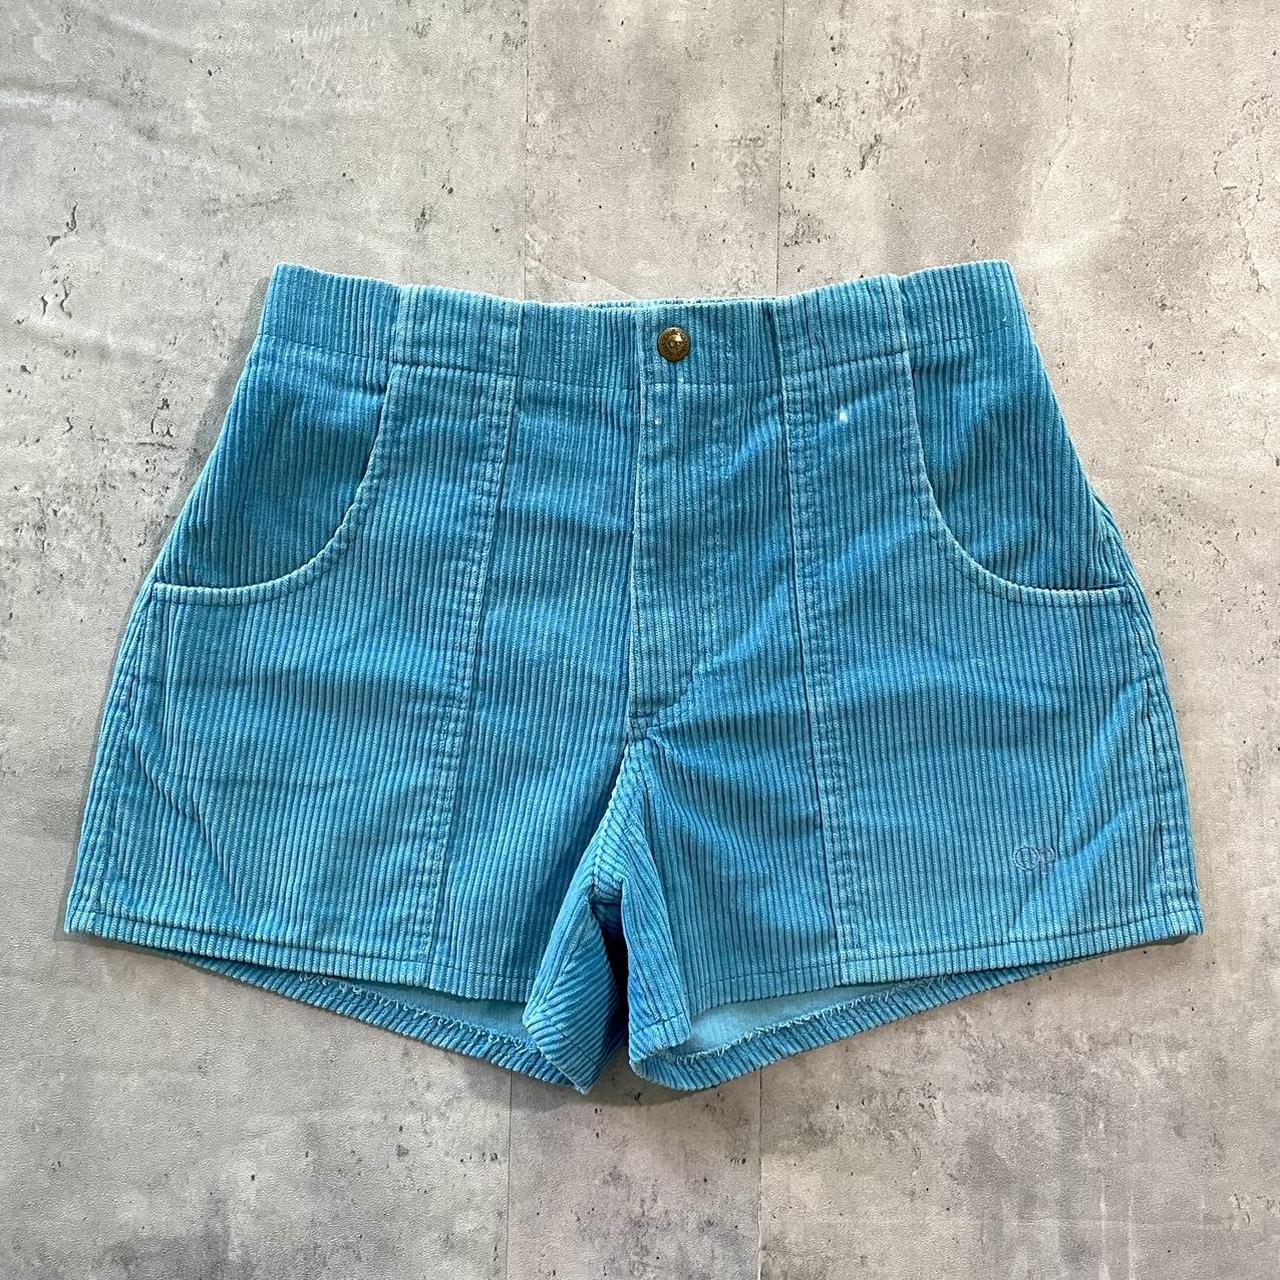 Vintage Ocean Pacific Corduroy Shorts 80s light blue... - Depop